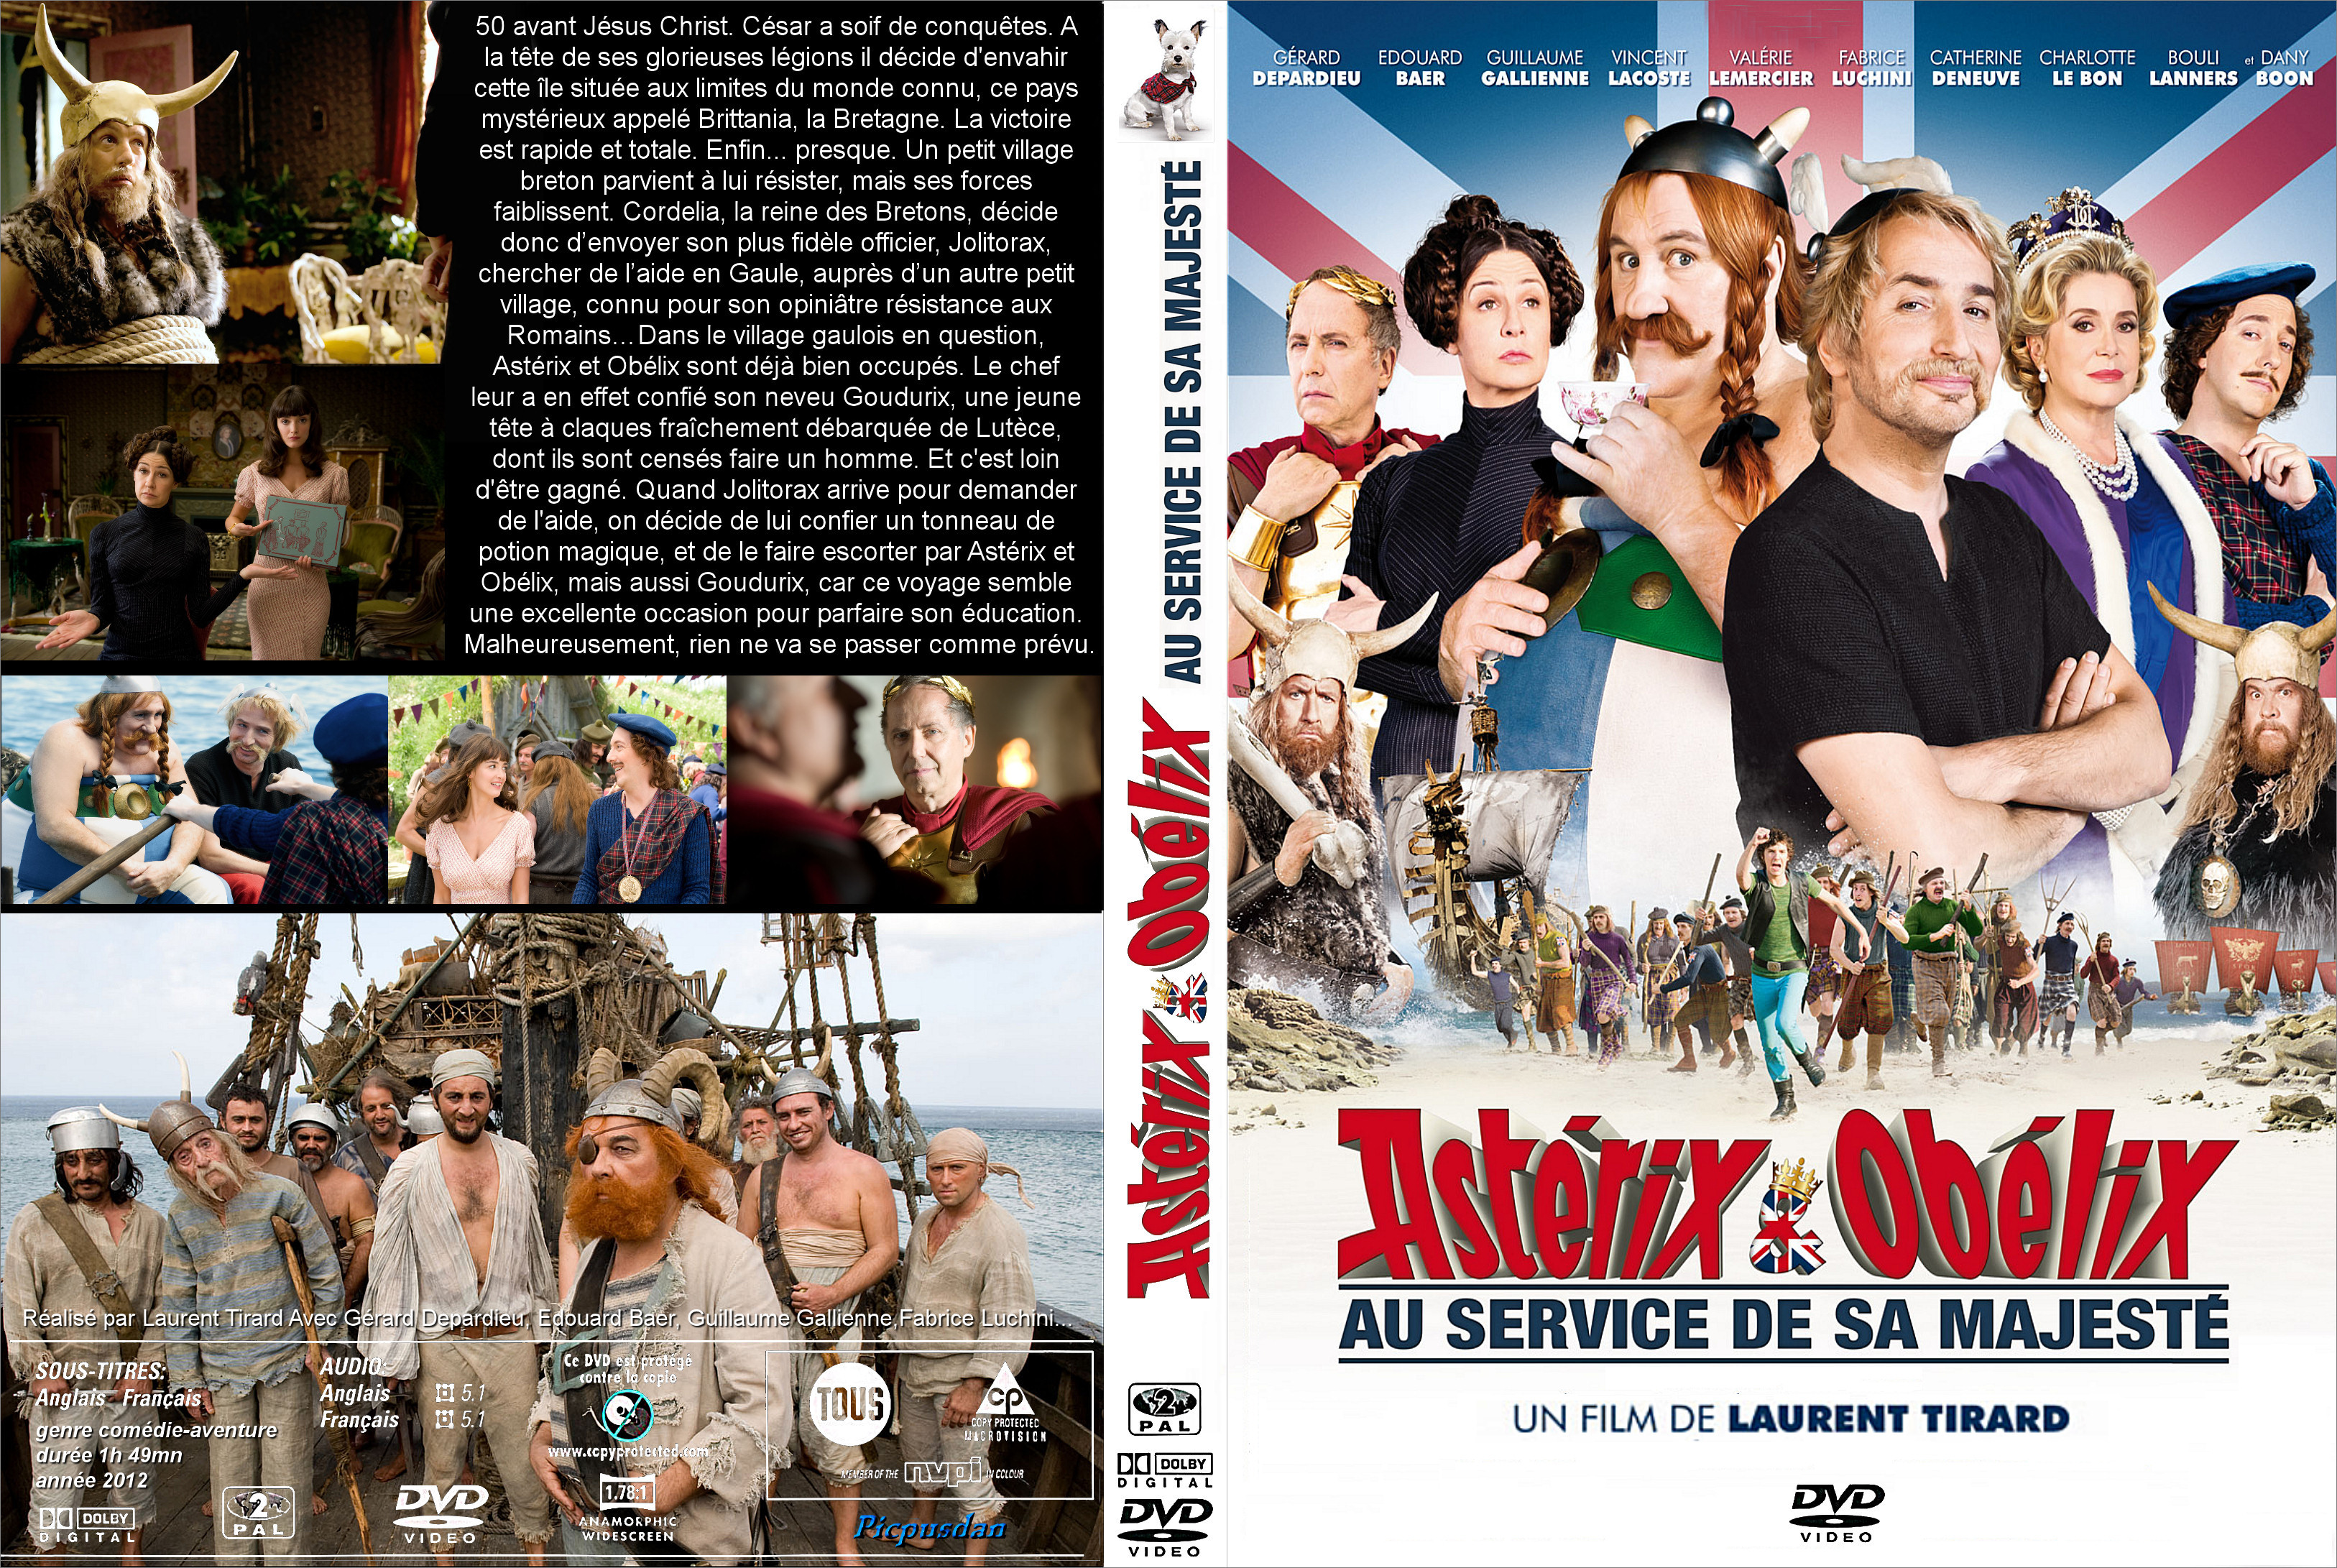 Jaquette DVD Astrix et Oblix: Au service de sa Majest custom v2